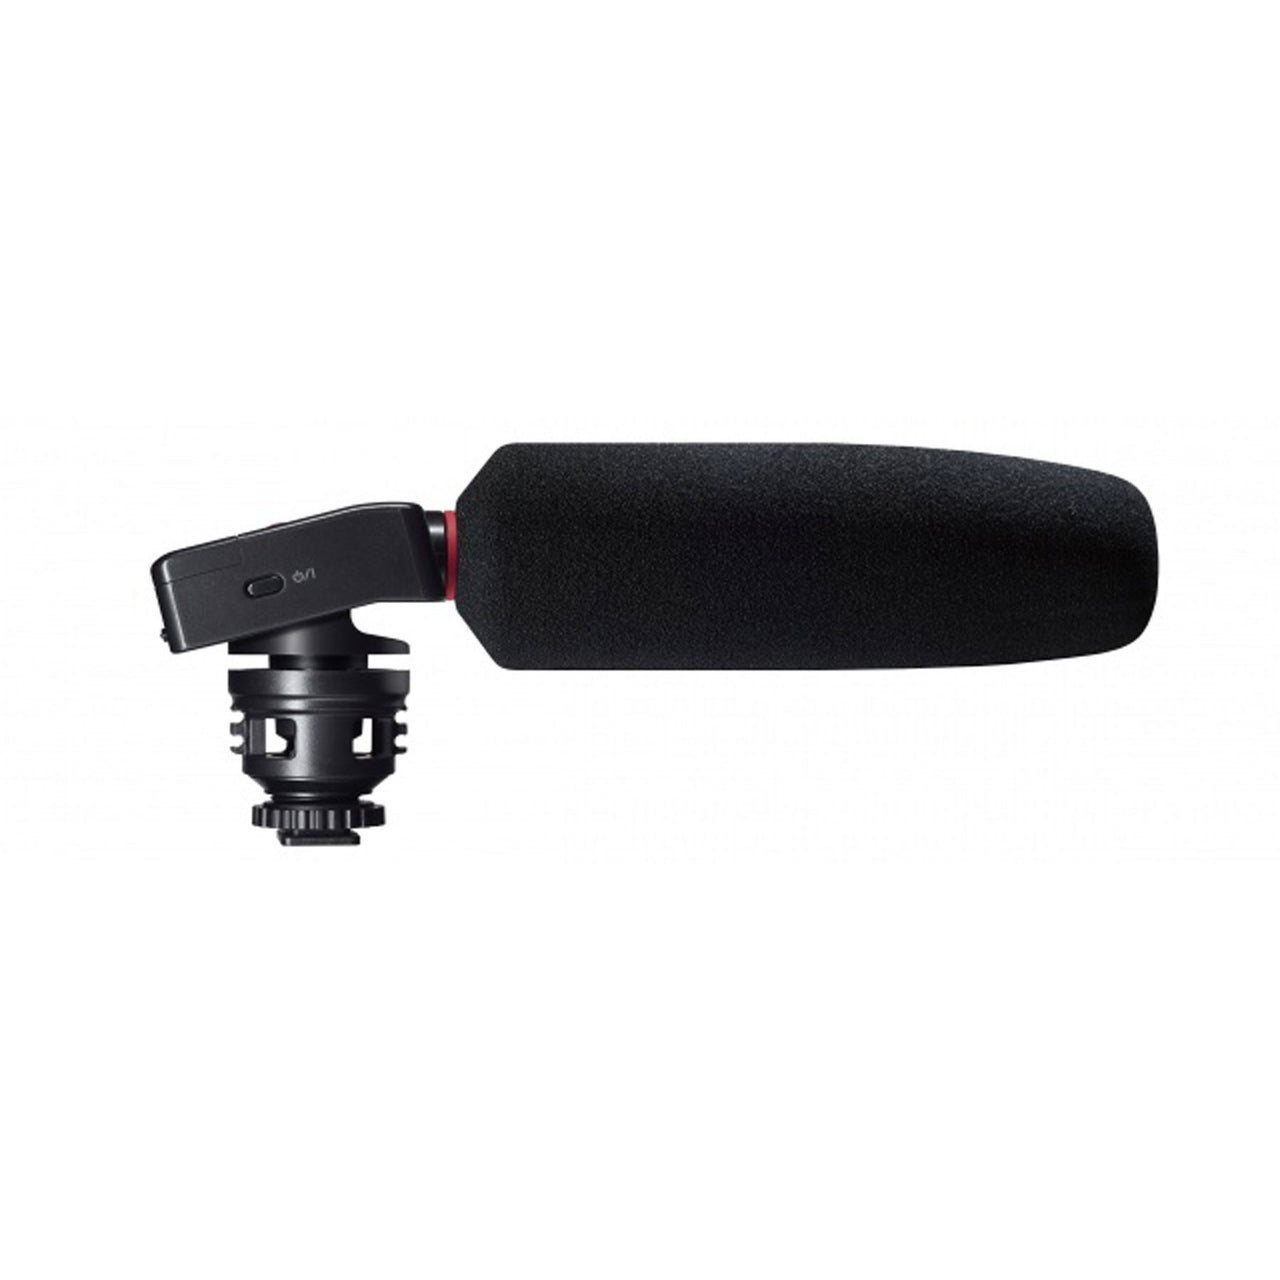 Grabadora Tascam Para Camaras Dlsr con Microfono Shotgun Dr-10sg